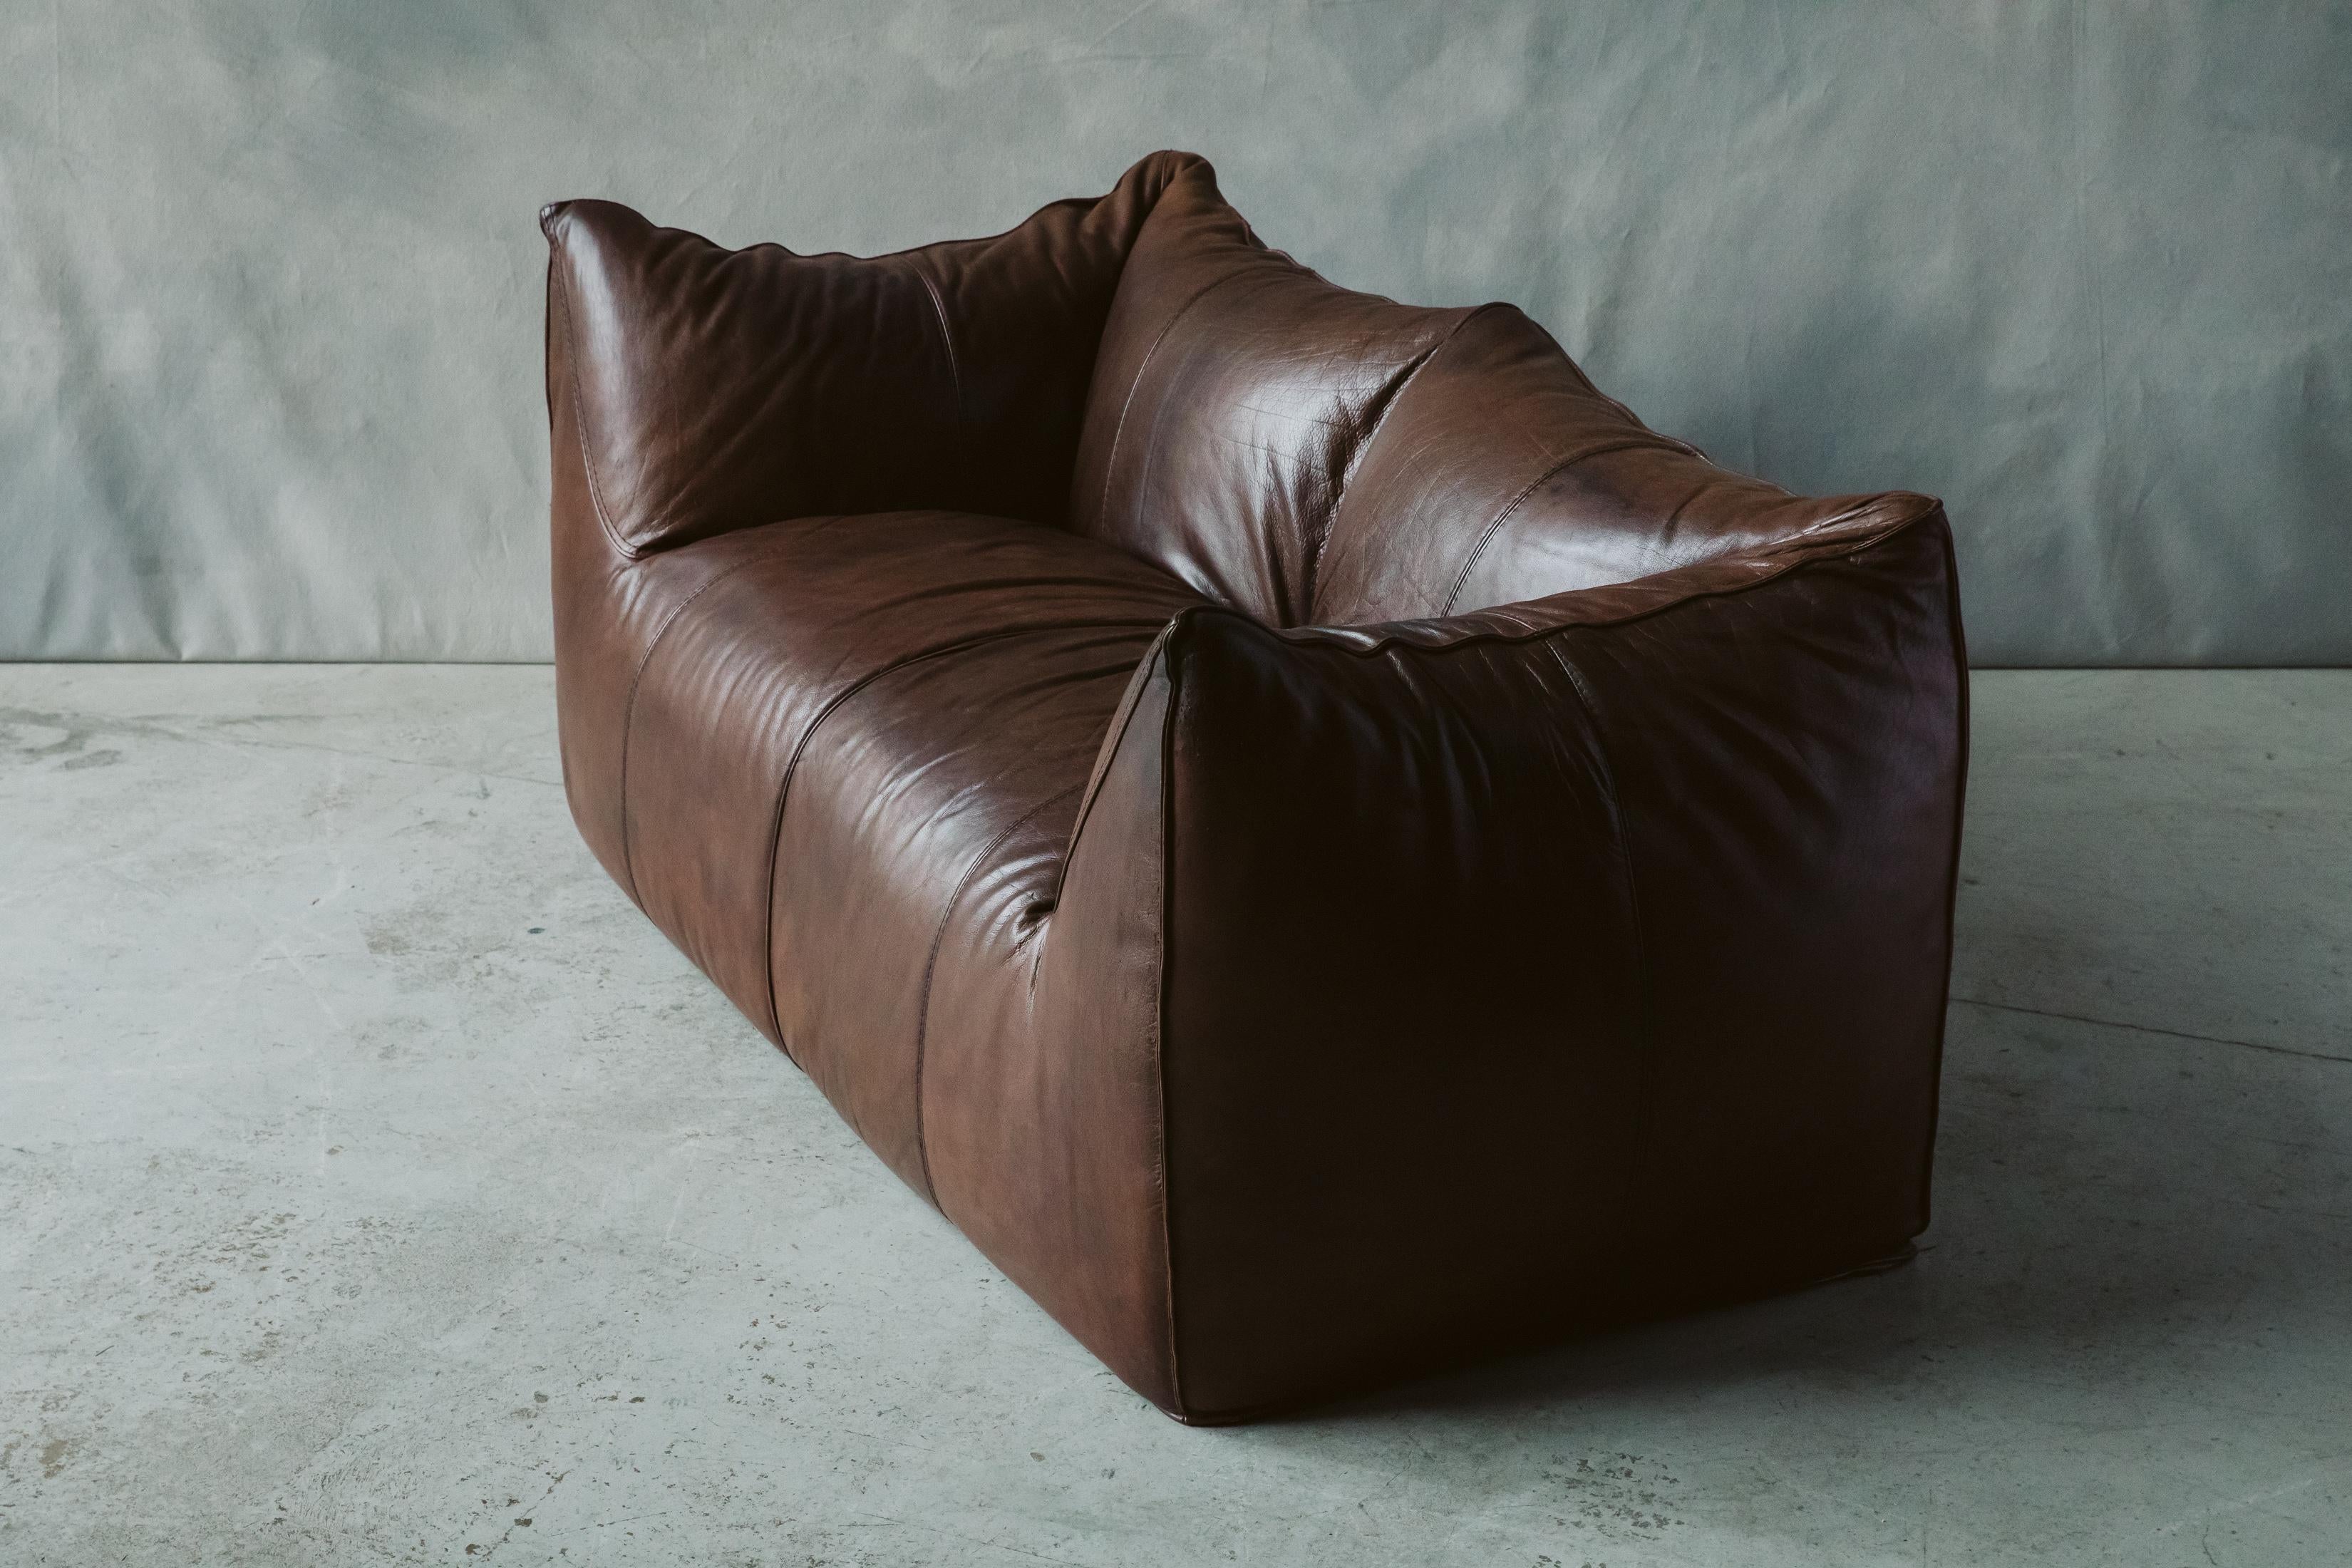 Late 20th Century Vintage Le Bambole Leather Sofa Designed by Mario Bellini, B&B Italia, 1978